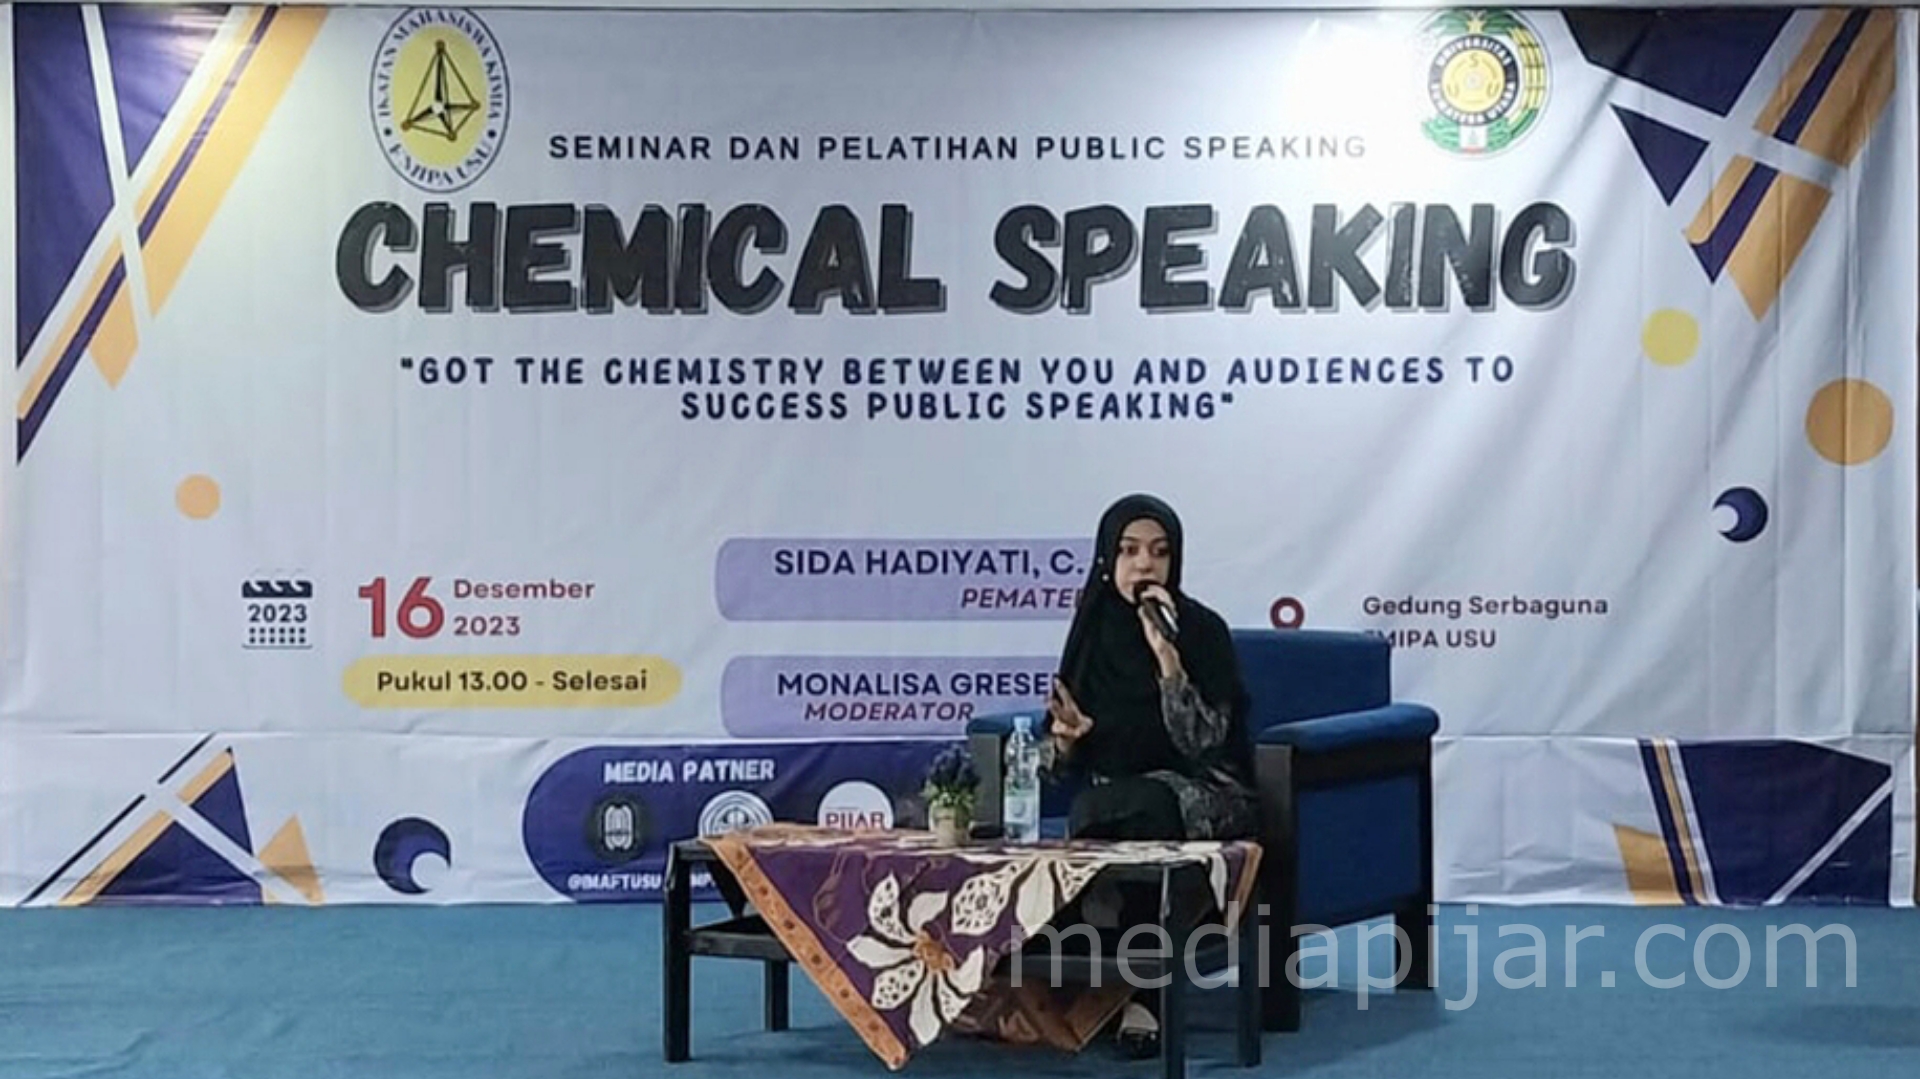 Seminar dan Pelatihan Chemical Public Speaking - www.mediapijar.com